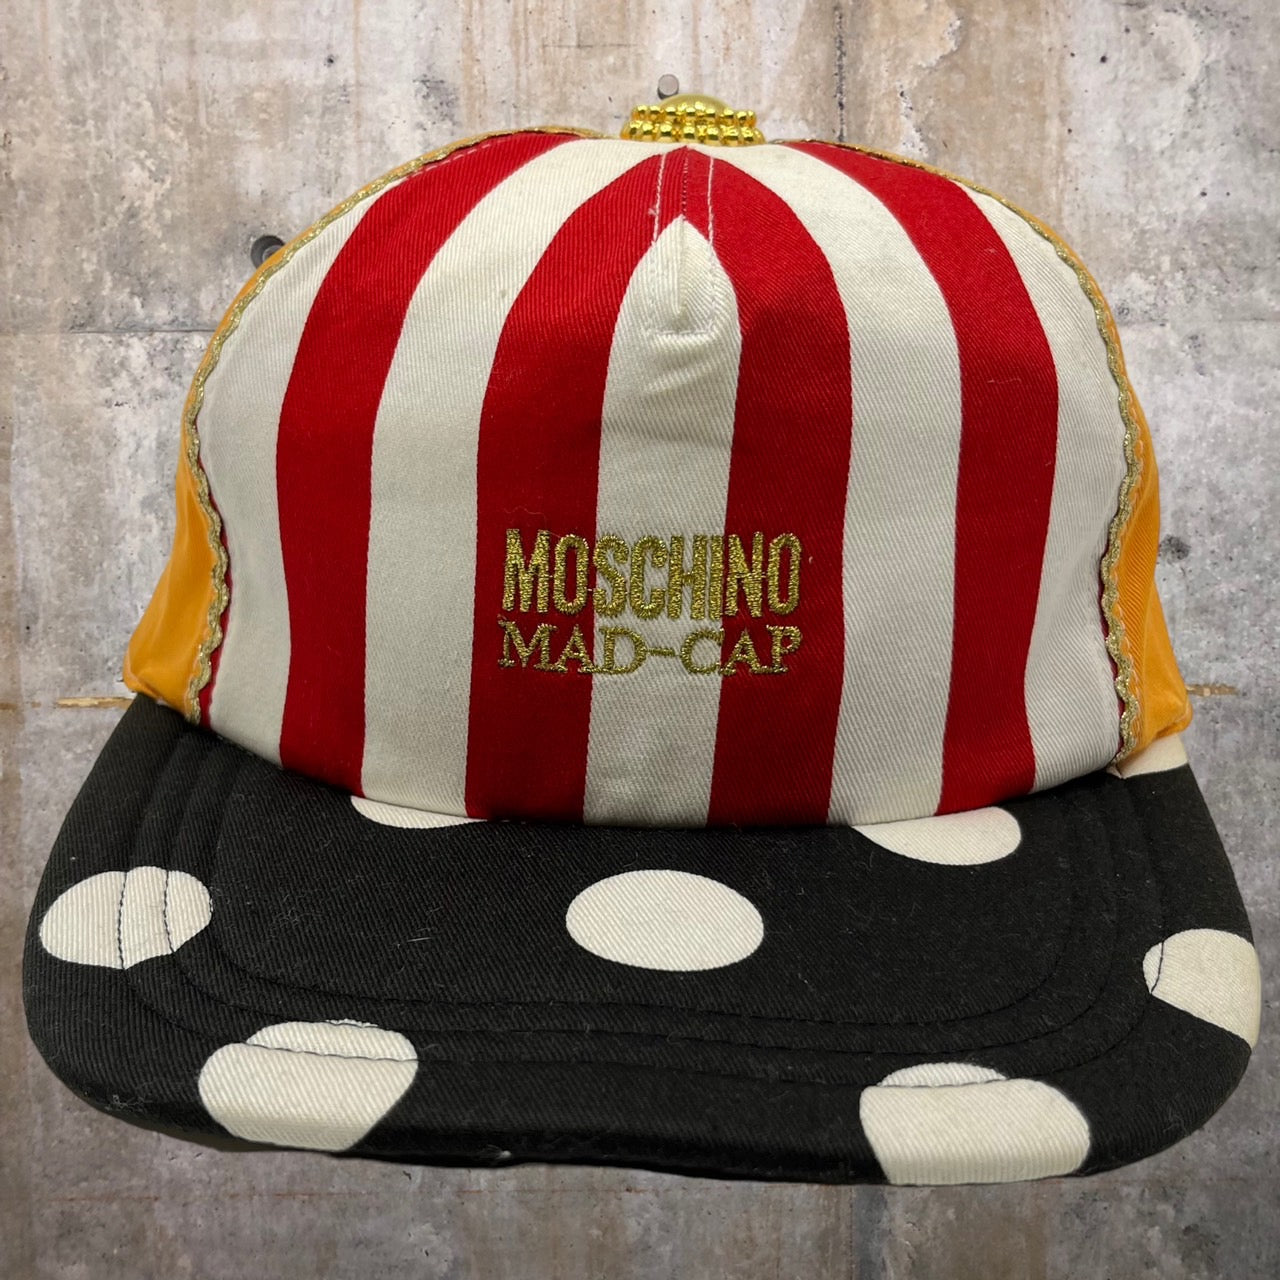 MOSCHINO(モスキーノ) 90's MAD CAP/キャップ/帽子 ミックス